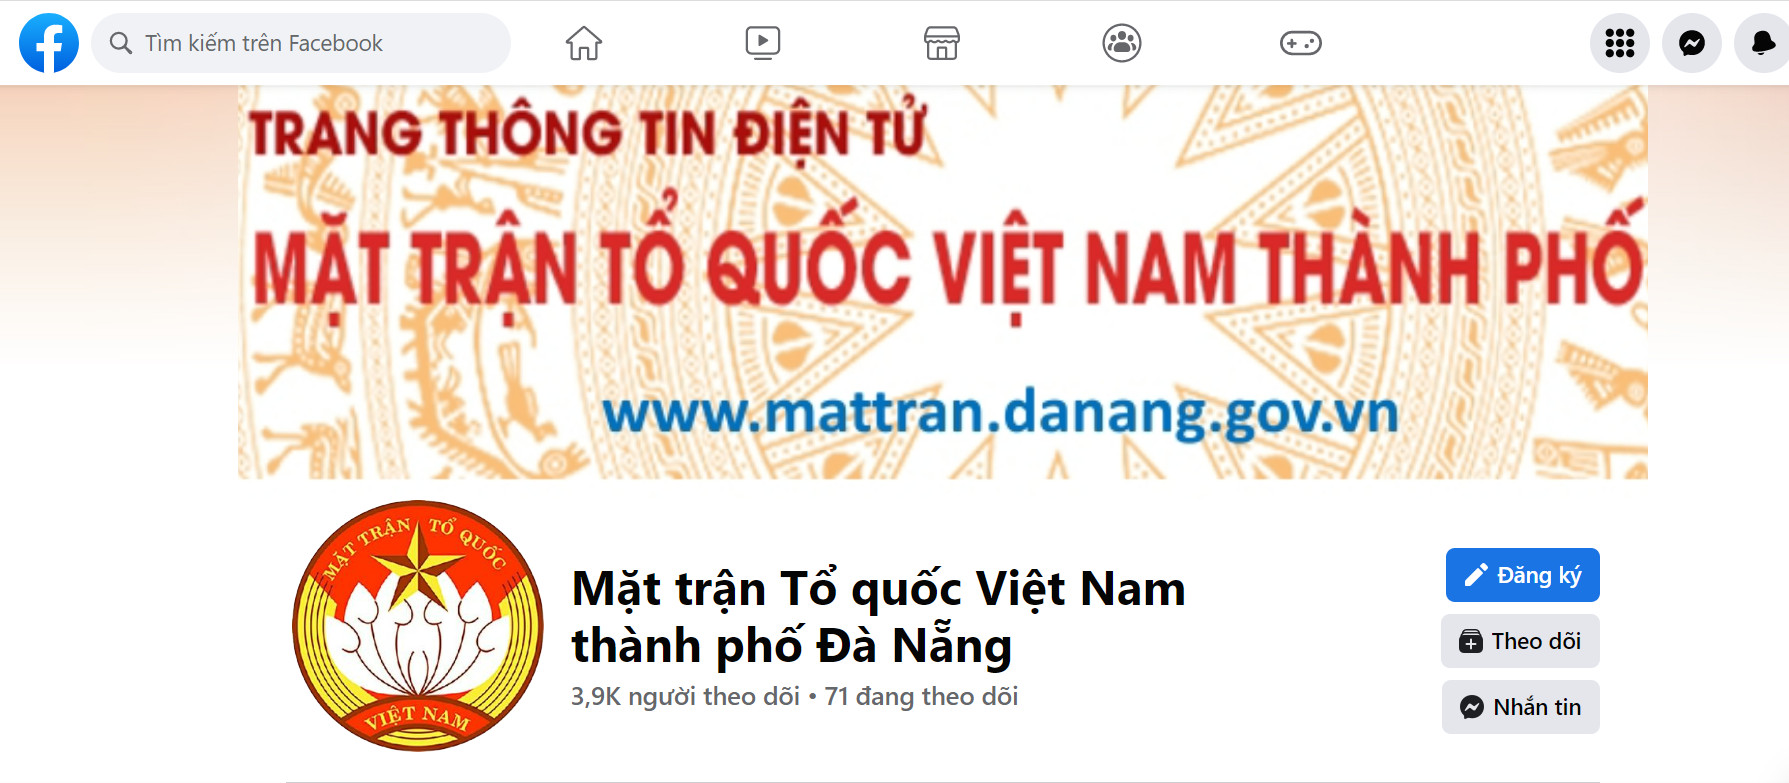 Fanpage “Mặt trận Tổ quốc Việt Nam thành phố Đà Nẵng” có hơn 3.900 lượt theo dõi. (Ảnh chụp màn hình)